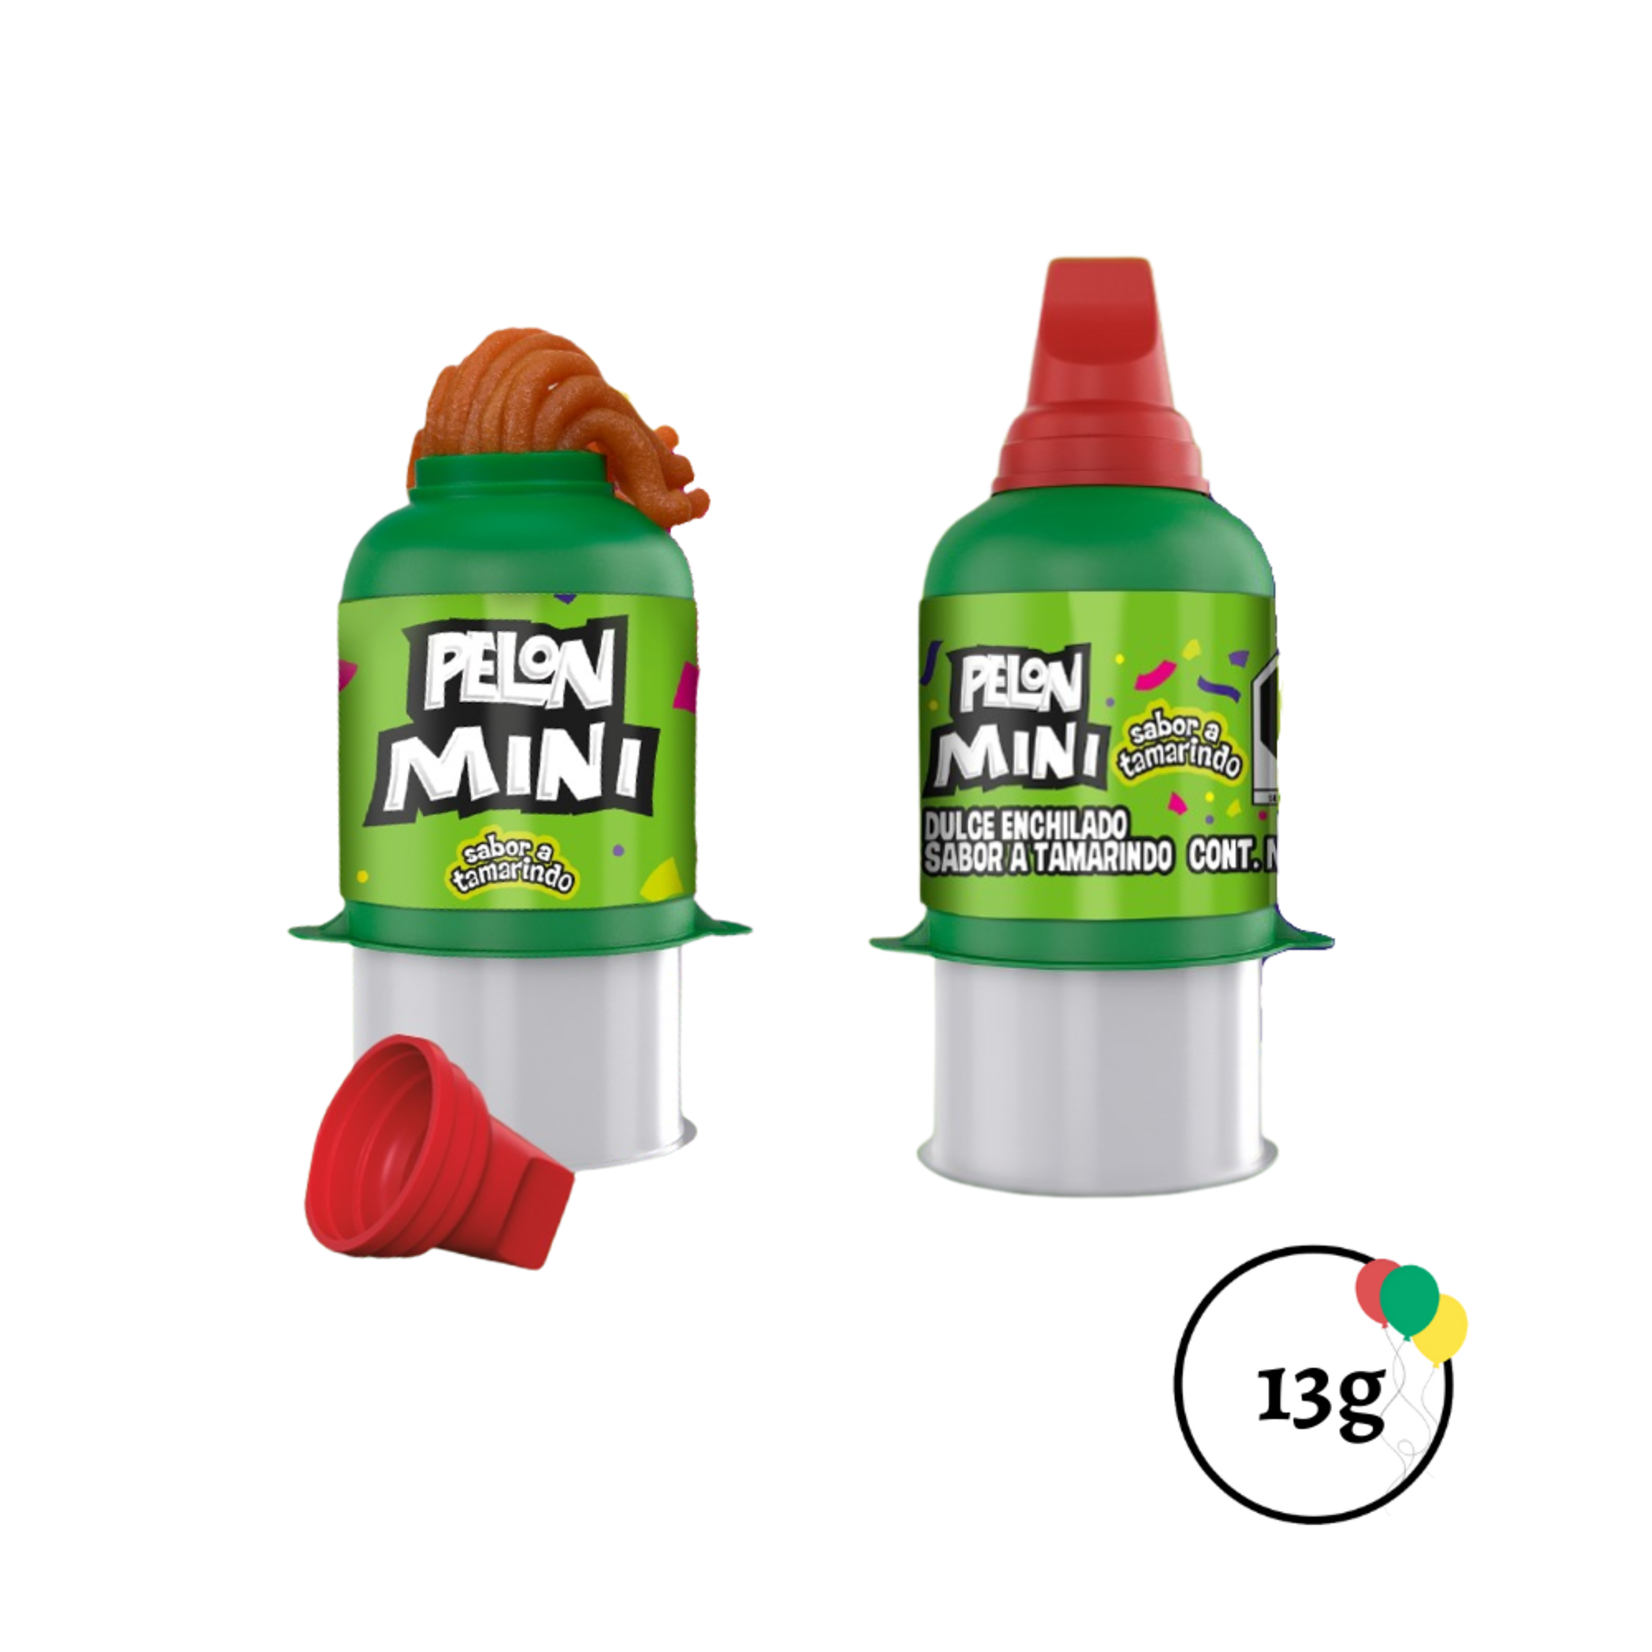 Pelon Soft Candy, Tamarindo Original, Mini - 12 pack, 0.52 oz packages